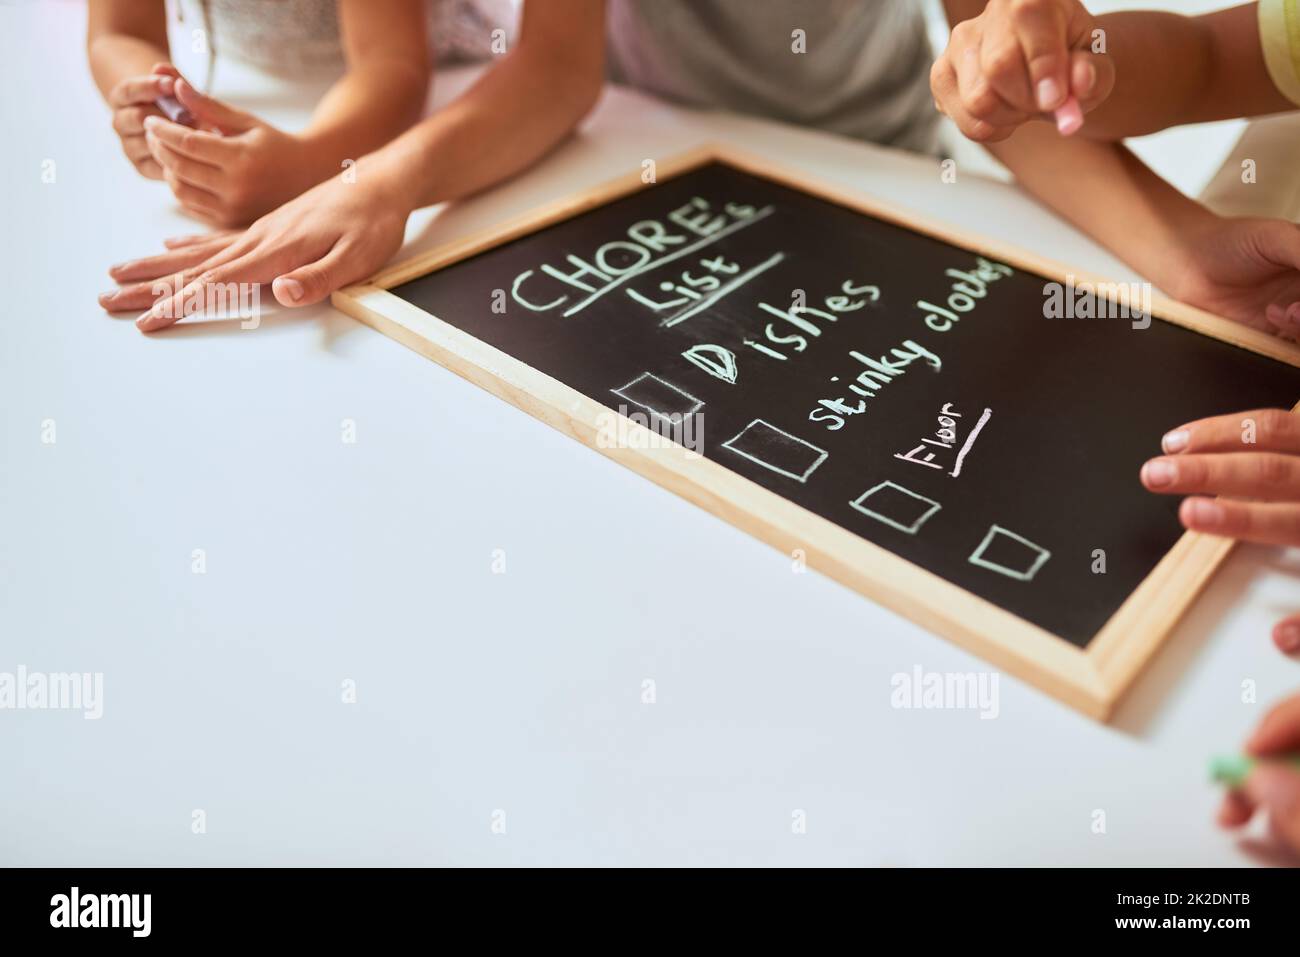 Auflisten ihrer Aufgaben. Nahaufnahme von Kindern, die zu Hause eine Liste der Aufgaben auf einer Tafel schreiben. Stockfoto